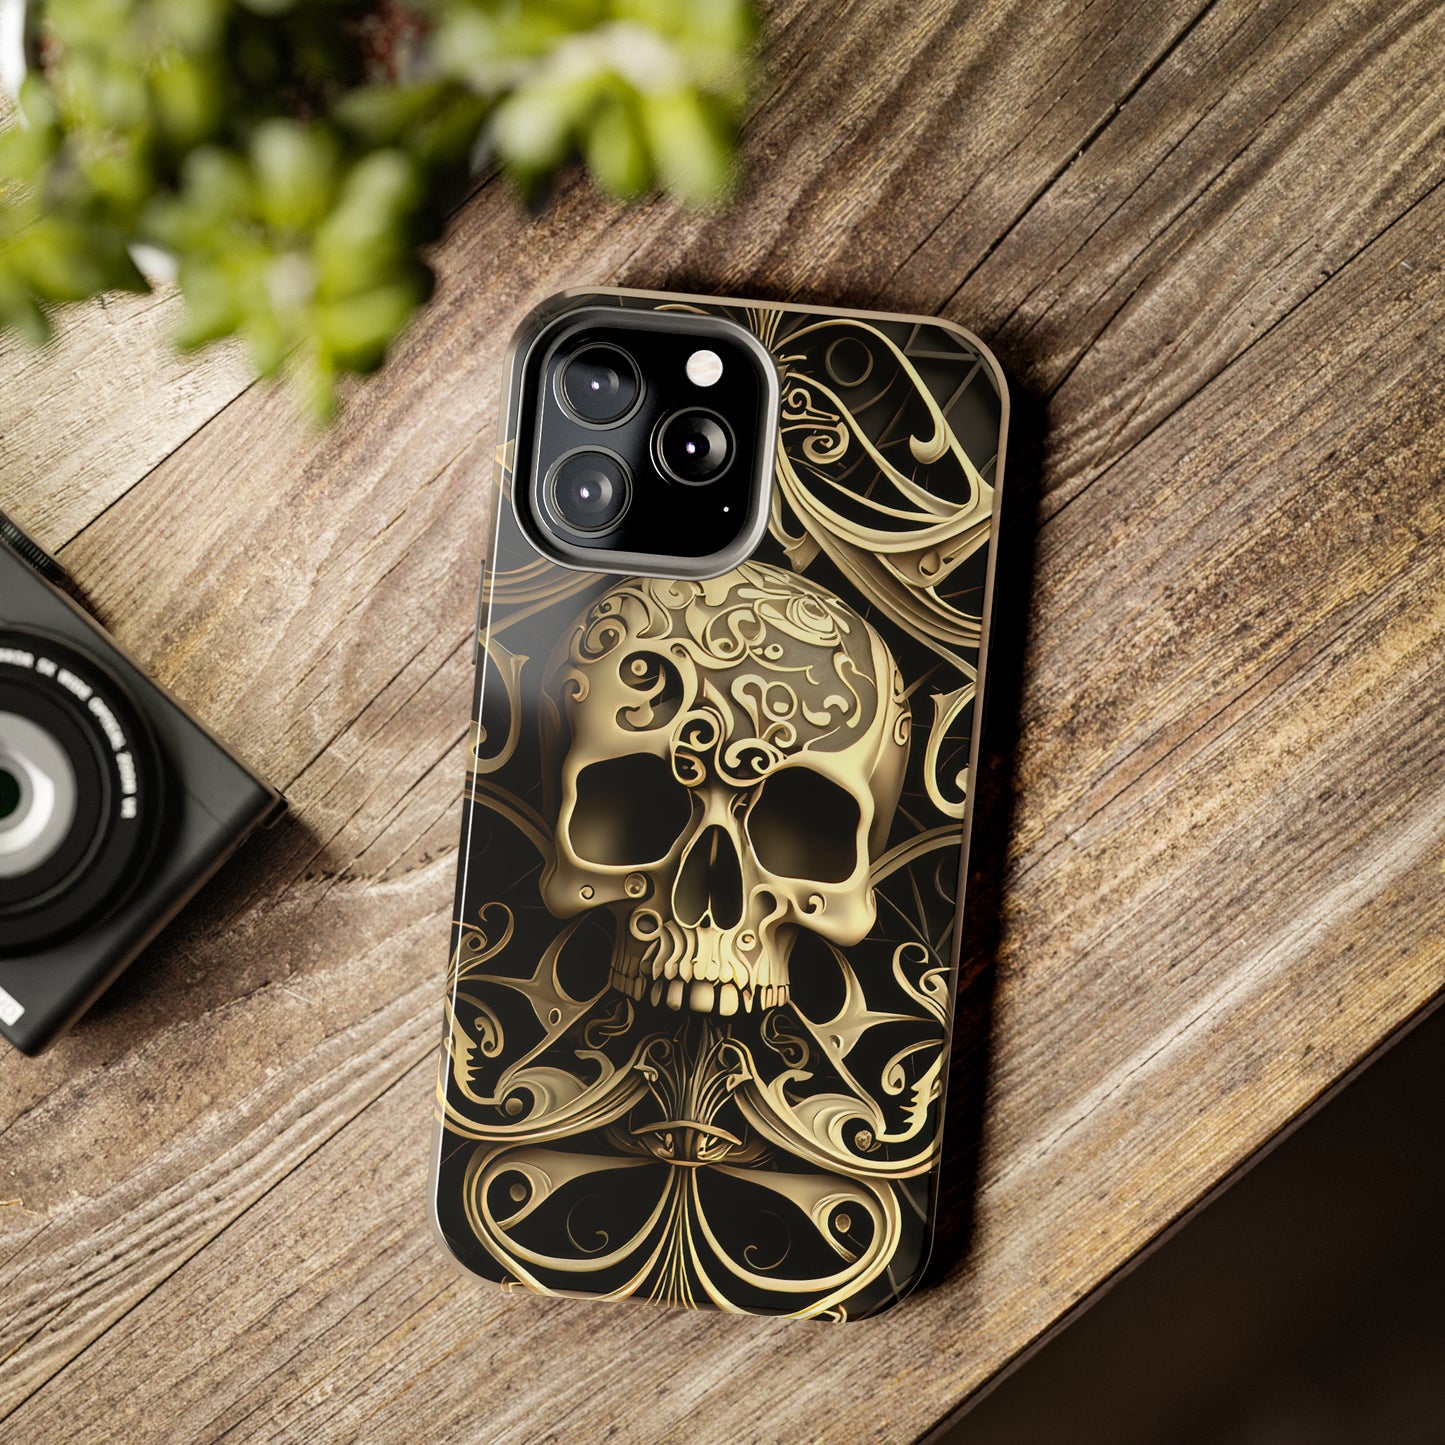 Metallic Chrome Skulls and classic Designed 7 Tough Phone Cases